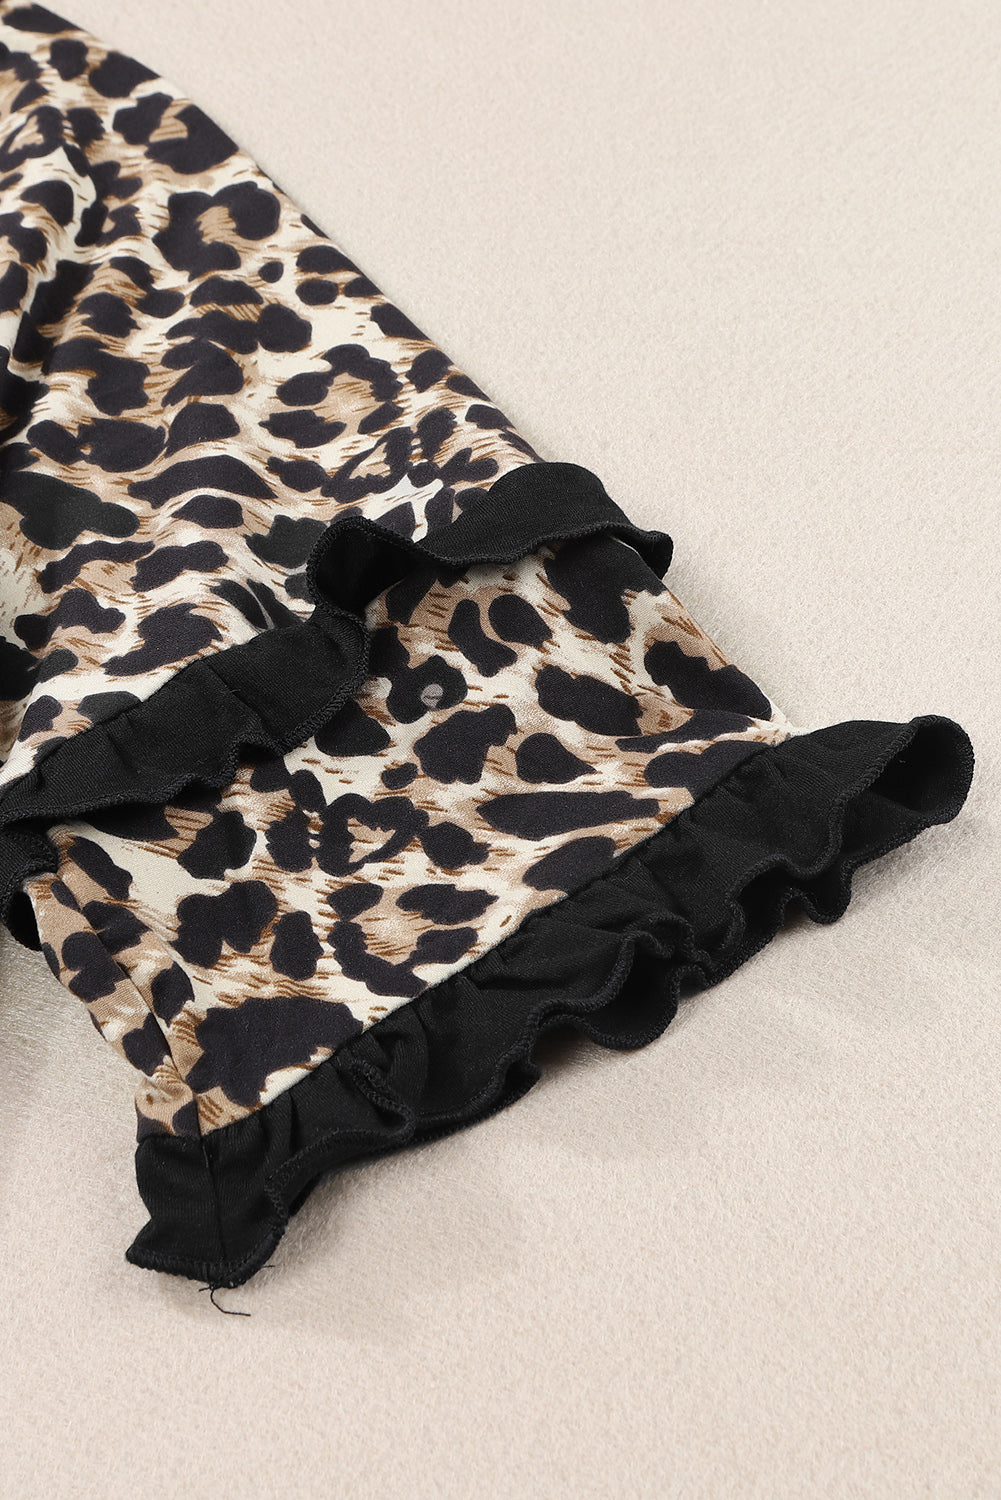 Crna majica s nabranim leopard rukavima od krpa